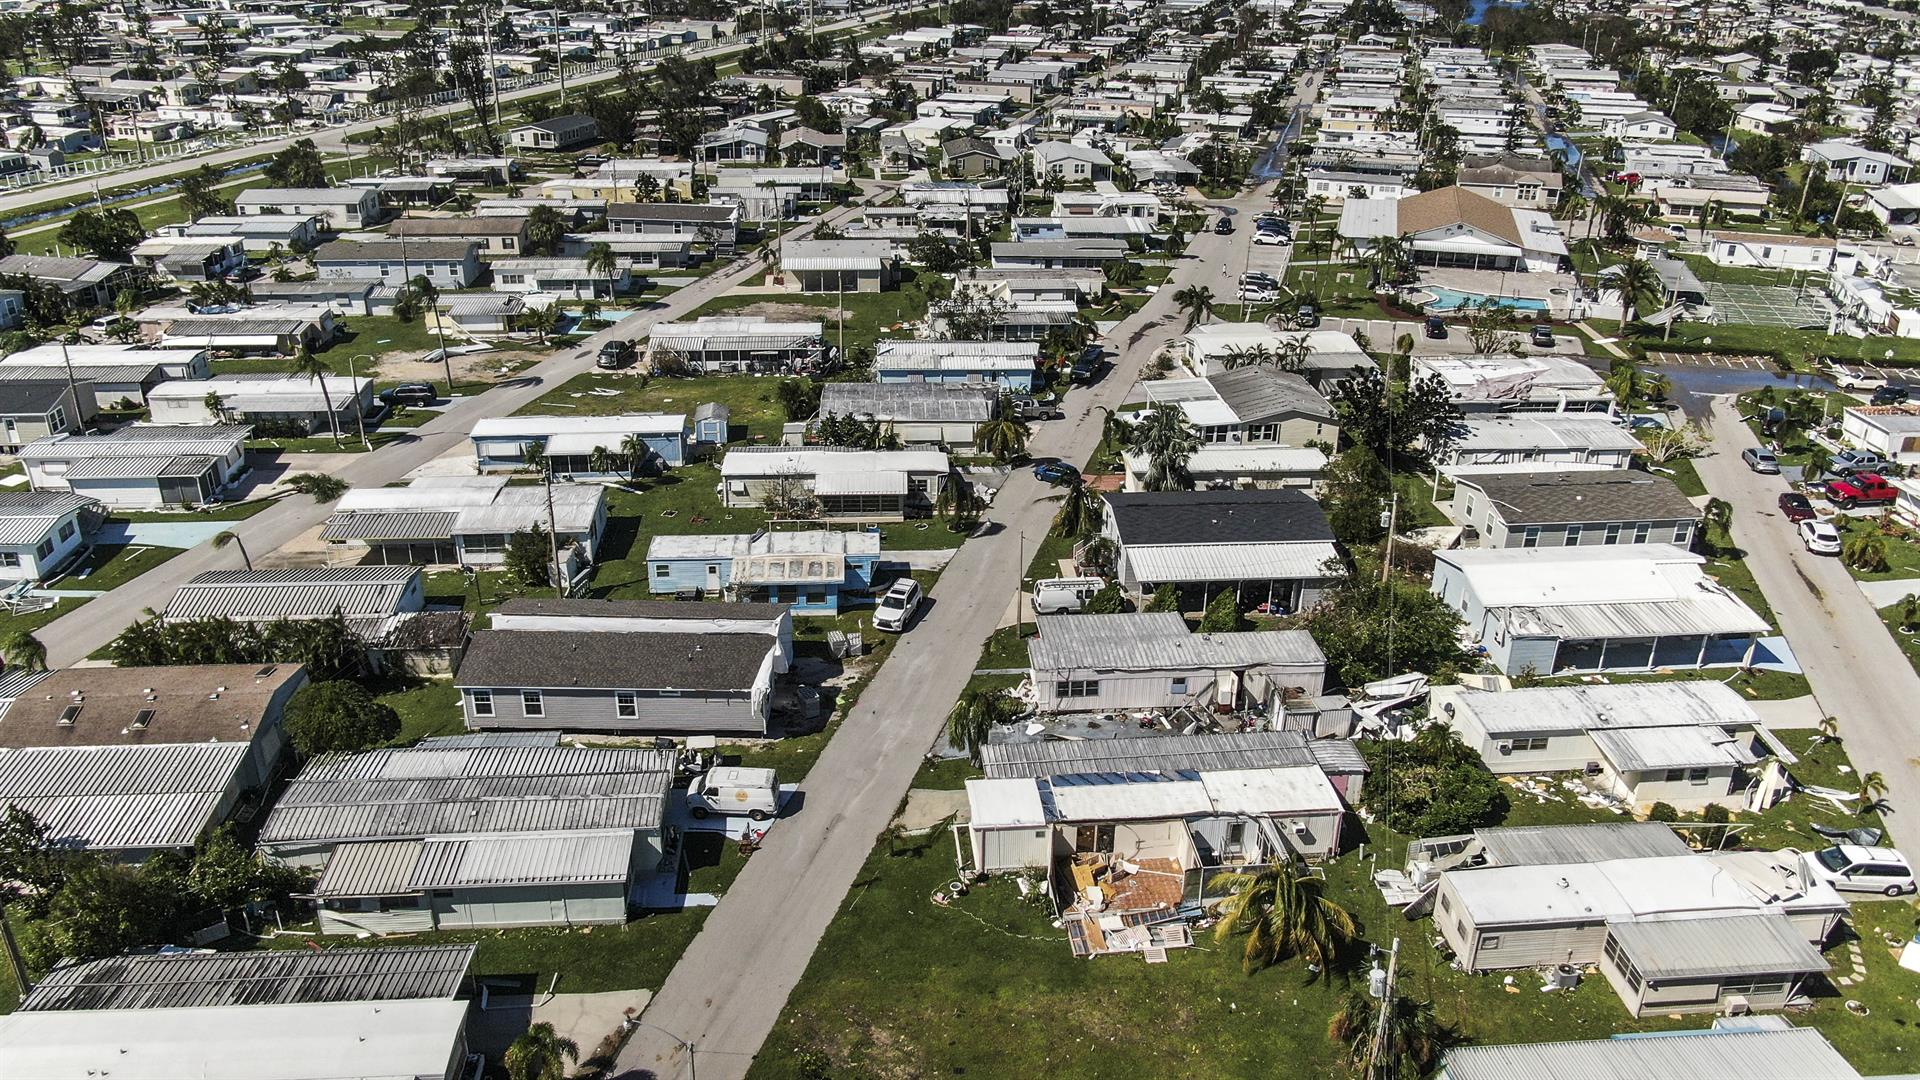 Viviendas totalmente destruidas dejó el huracán en Florida.